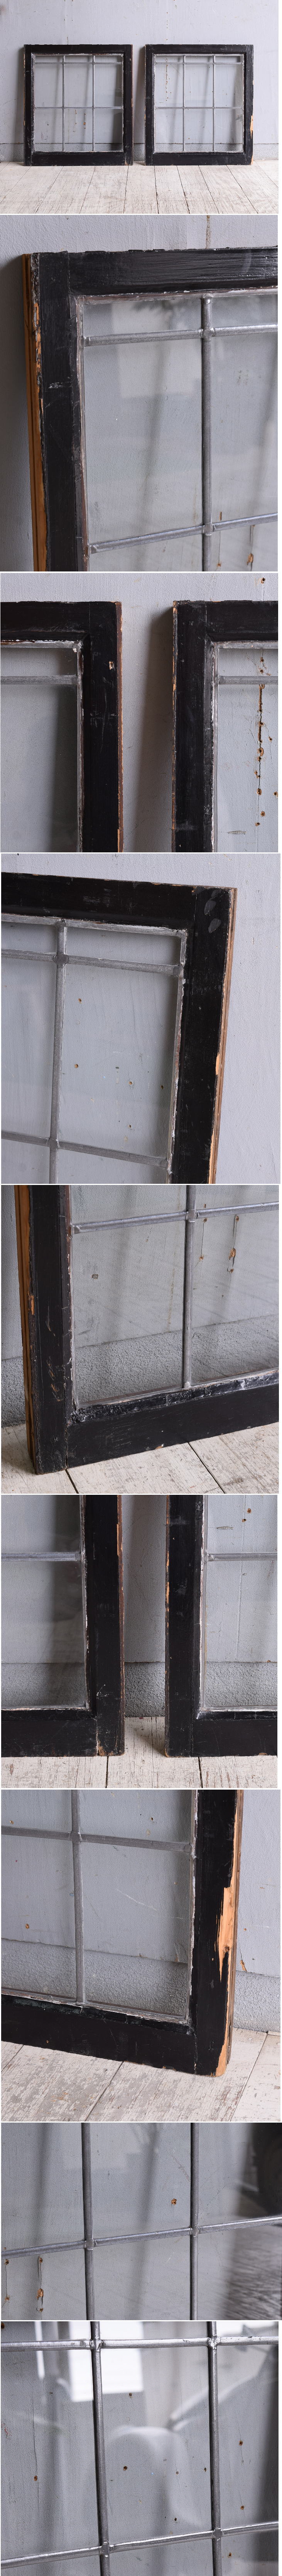 イギリス アンティーク 窓×2 無色透明 9953